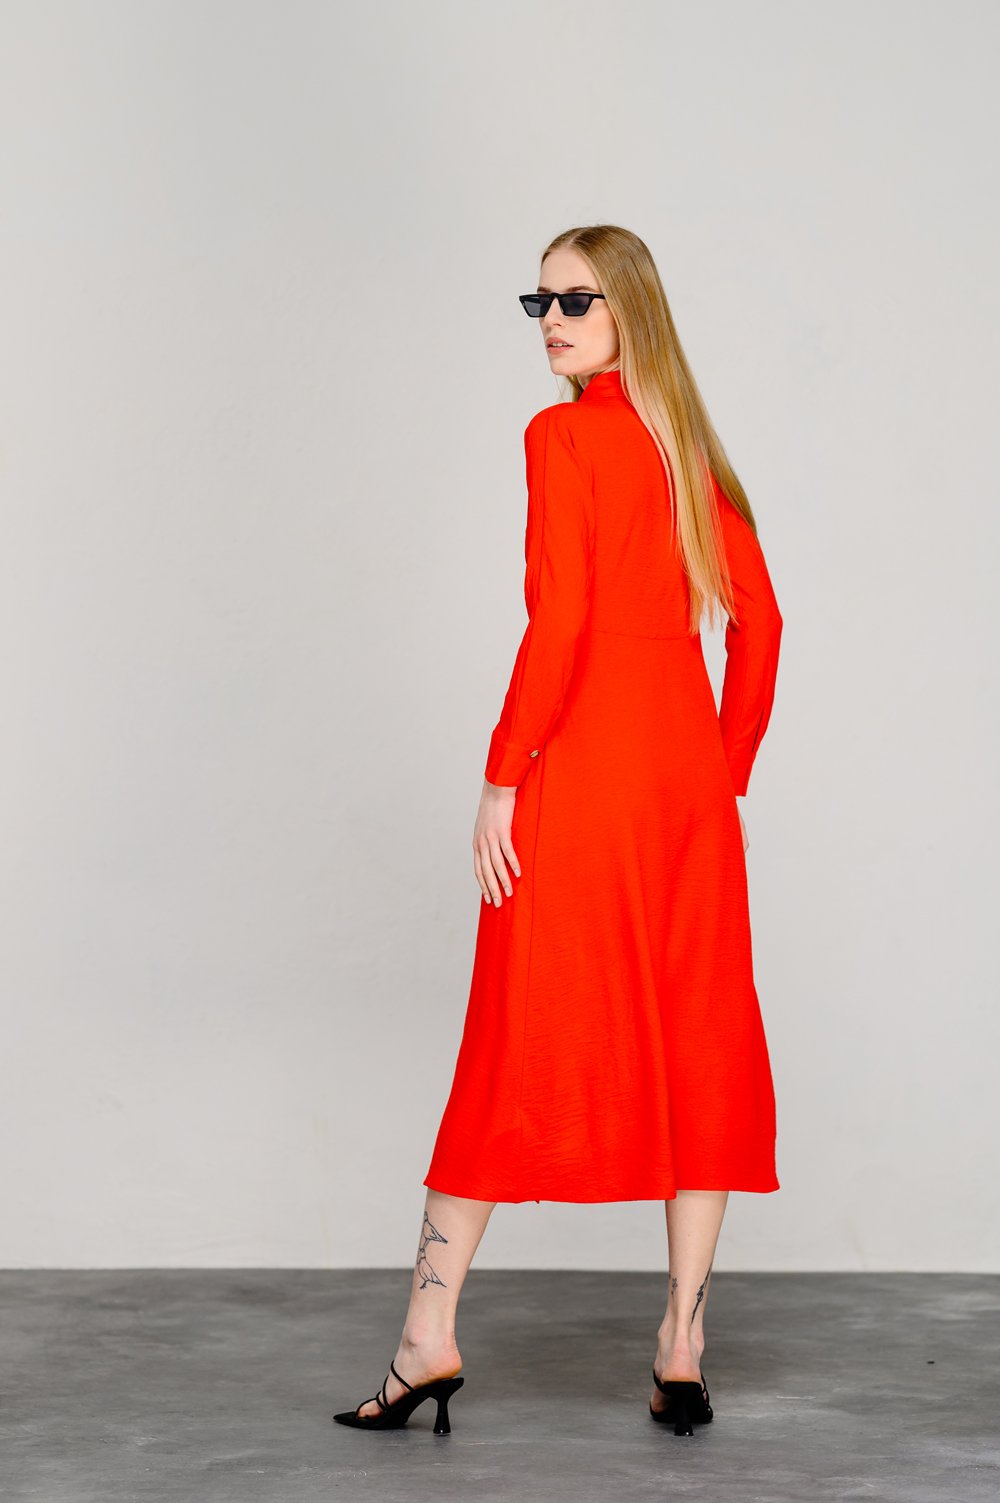 Оранжевое полуприталенное платье с эффектной юбкой-трапецией